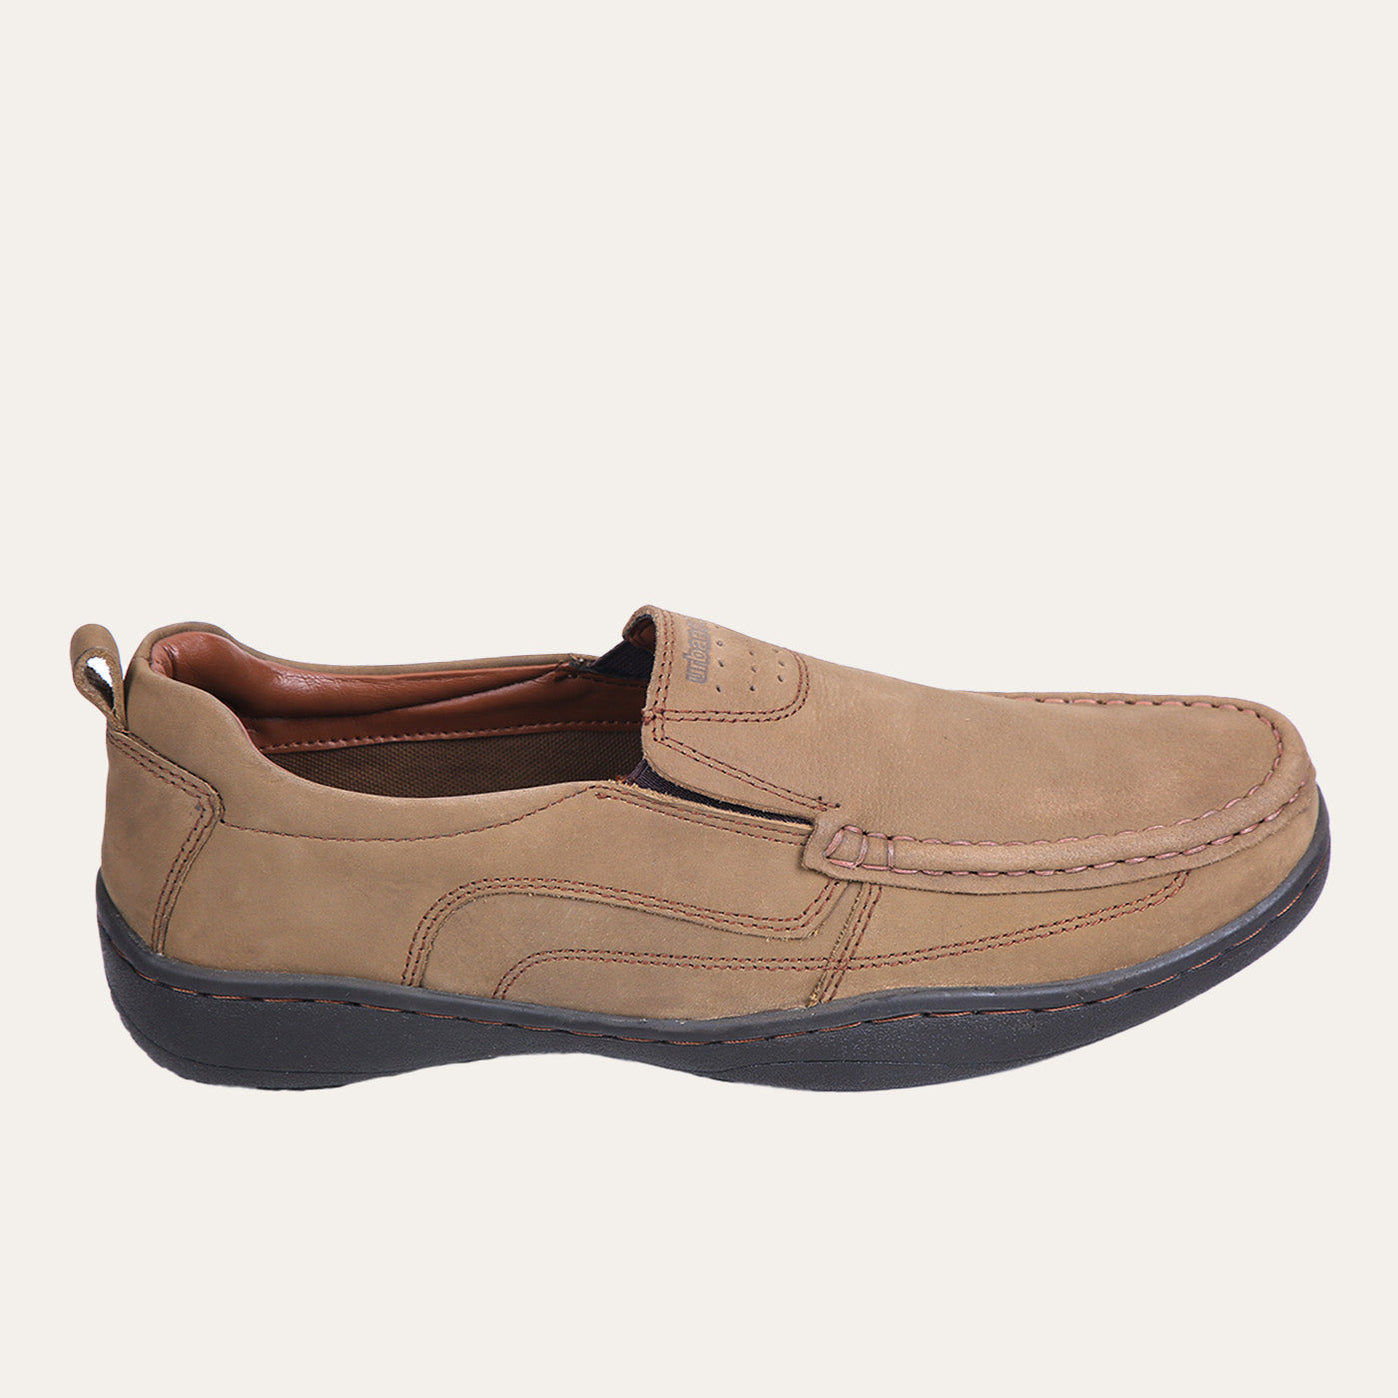 Buy Men Casual Shoes Online in Pakistan | Urbansole — Urbansole